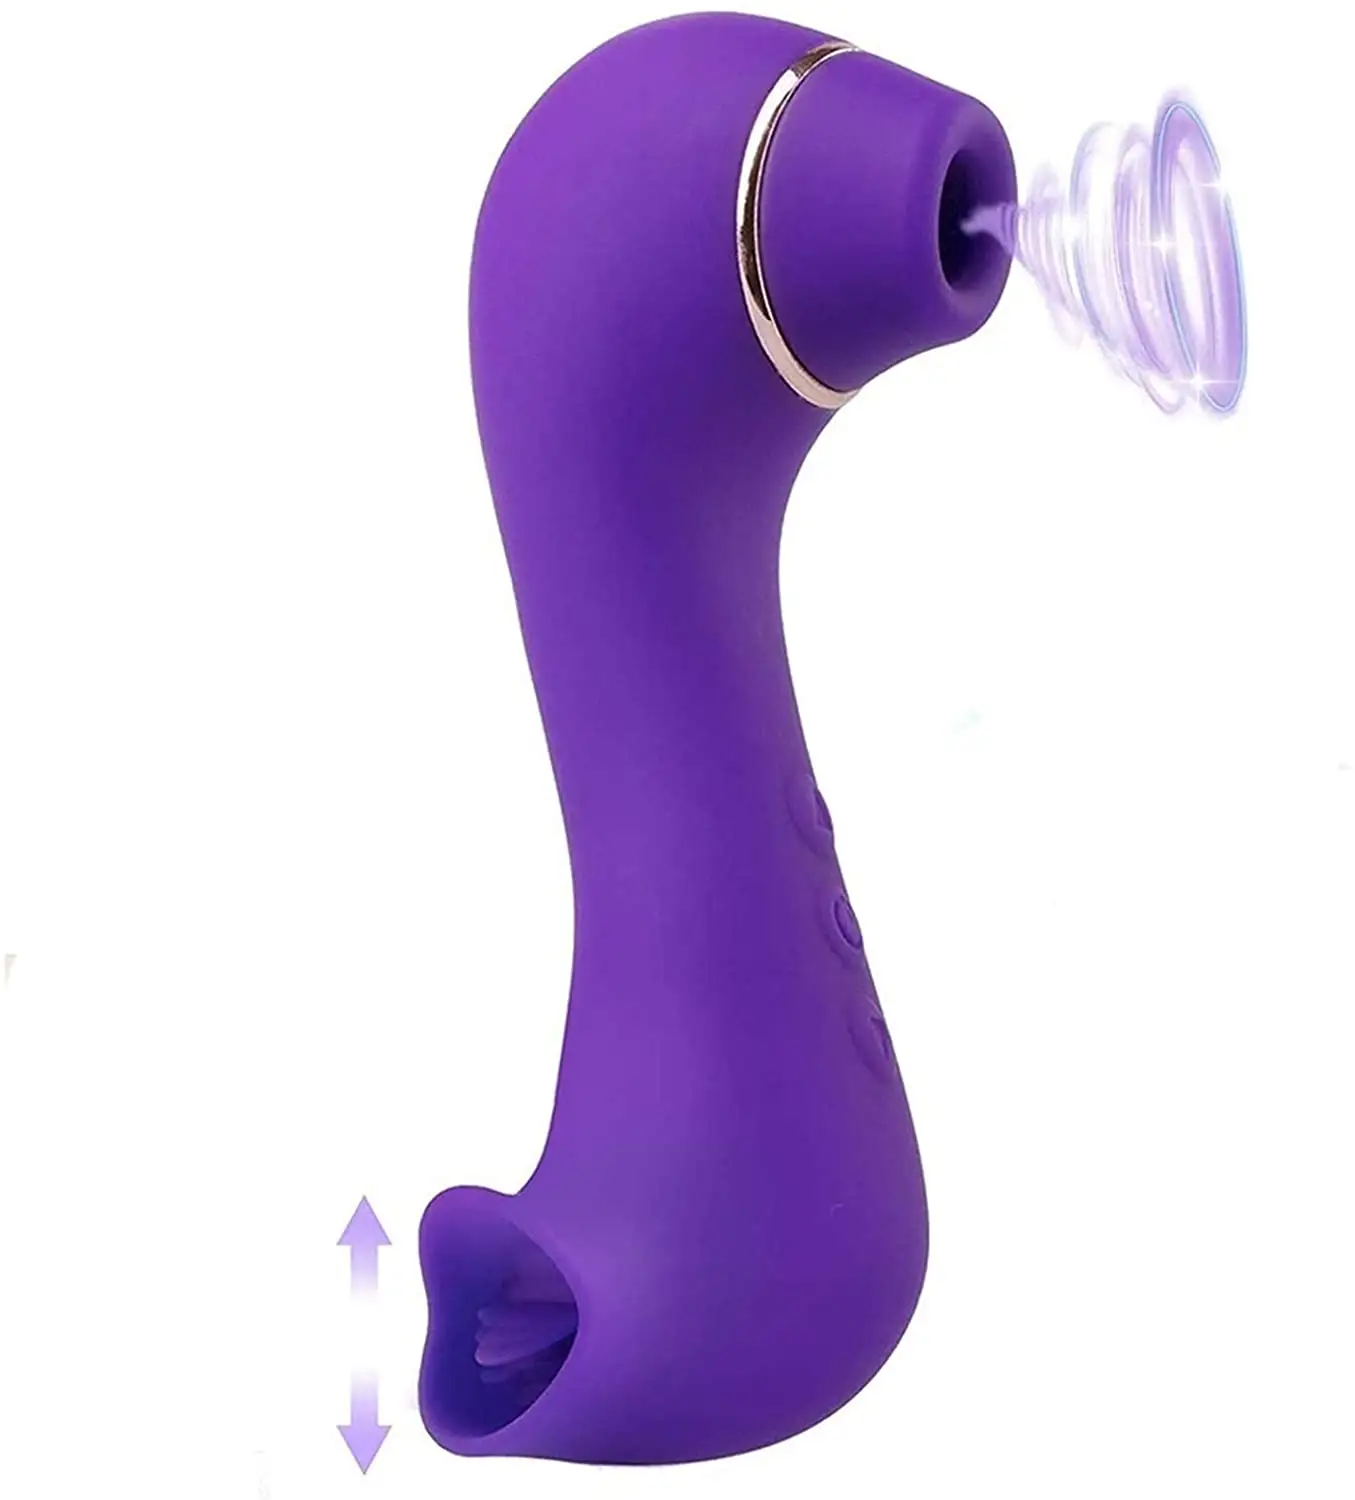 Yetişkin bayan seks oyuncak vibratör yalama emme vibratör seks kadın seks oyuncakları kadınlar için Masturbating